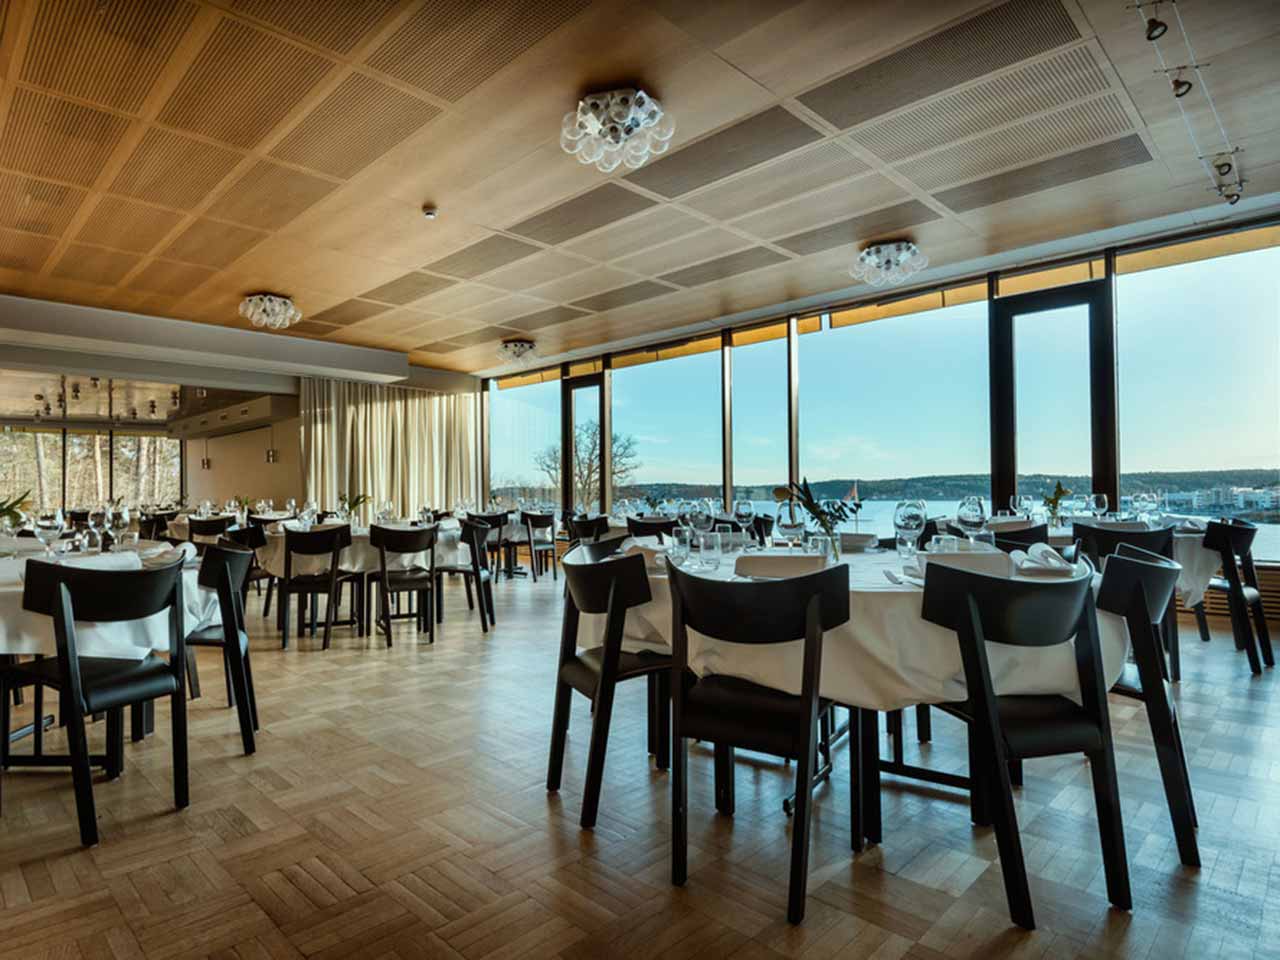 Elfvik Strand Sjönära på Lidingö - Runda bord i matsalen uppdukade